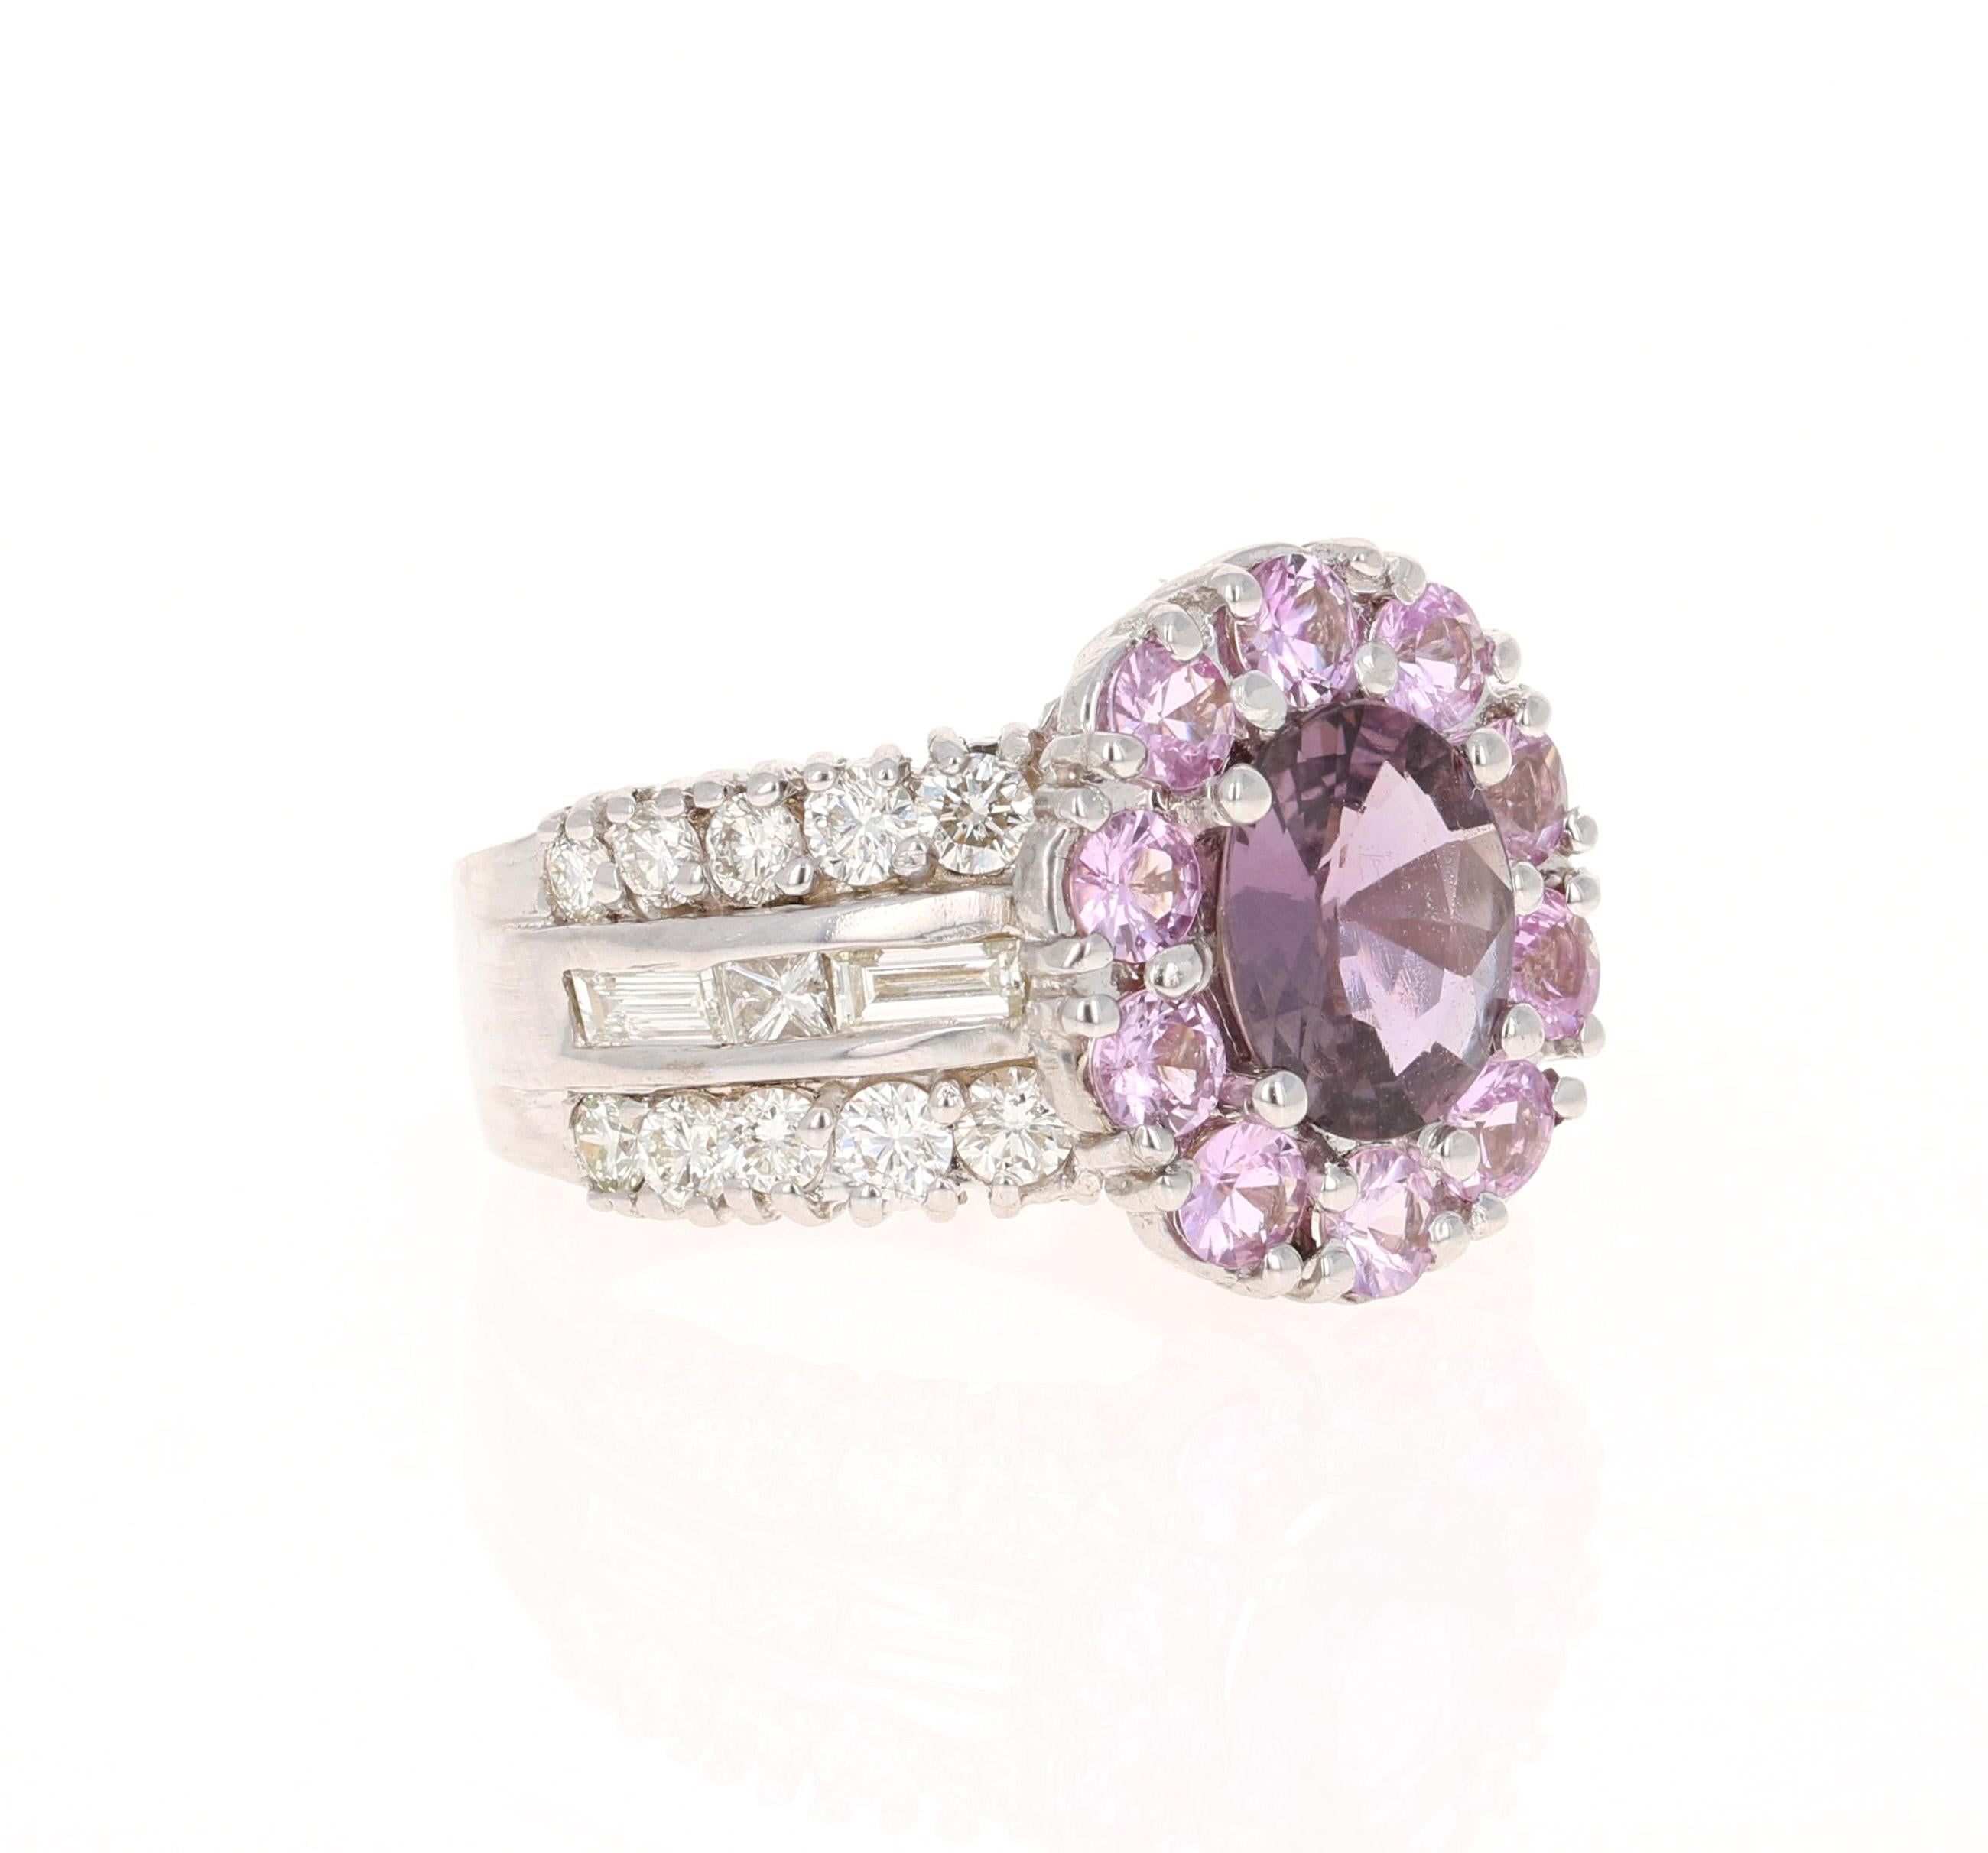 Dieser Ring hat einen Oval Cut GIA Certified Pinkish Purple Sapphire, die 1,56 Karat wiegt. Die Abmessungen des Sapphire betragen etwa 8,6 mm x 7 mm. Außerdem hat er 10 rosa Saphire im Rundschliff mit einem Gewicht von 1,15 Karat. Auf den Schenkeln